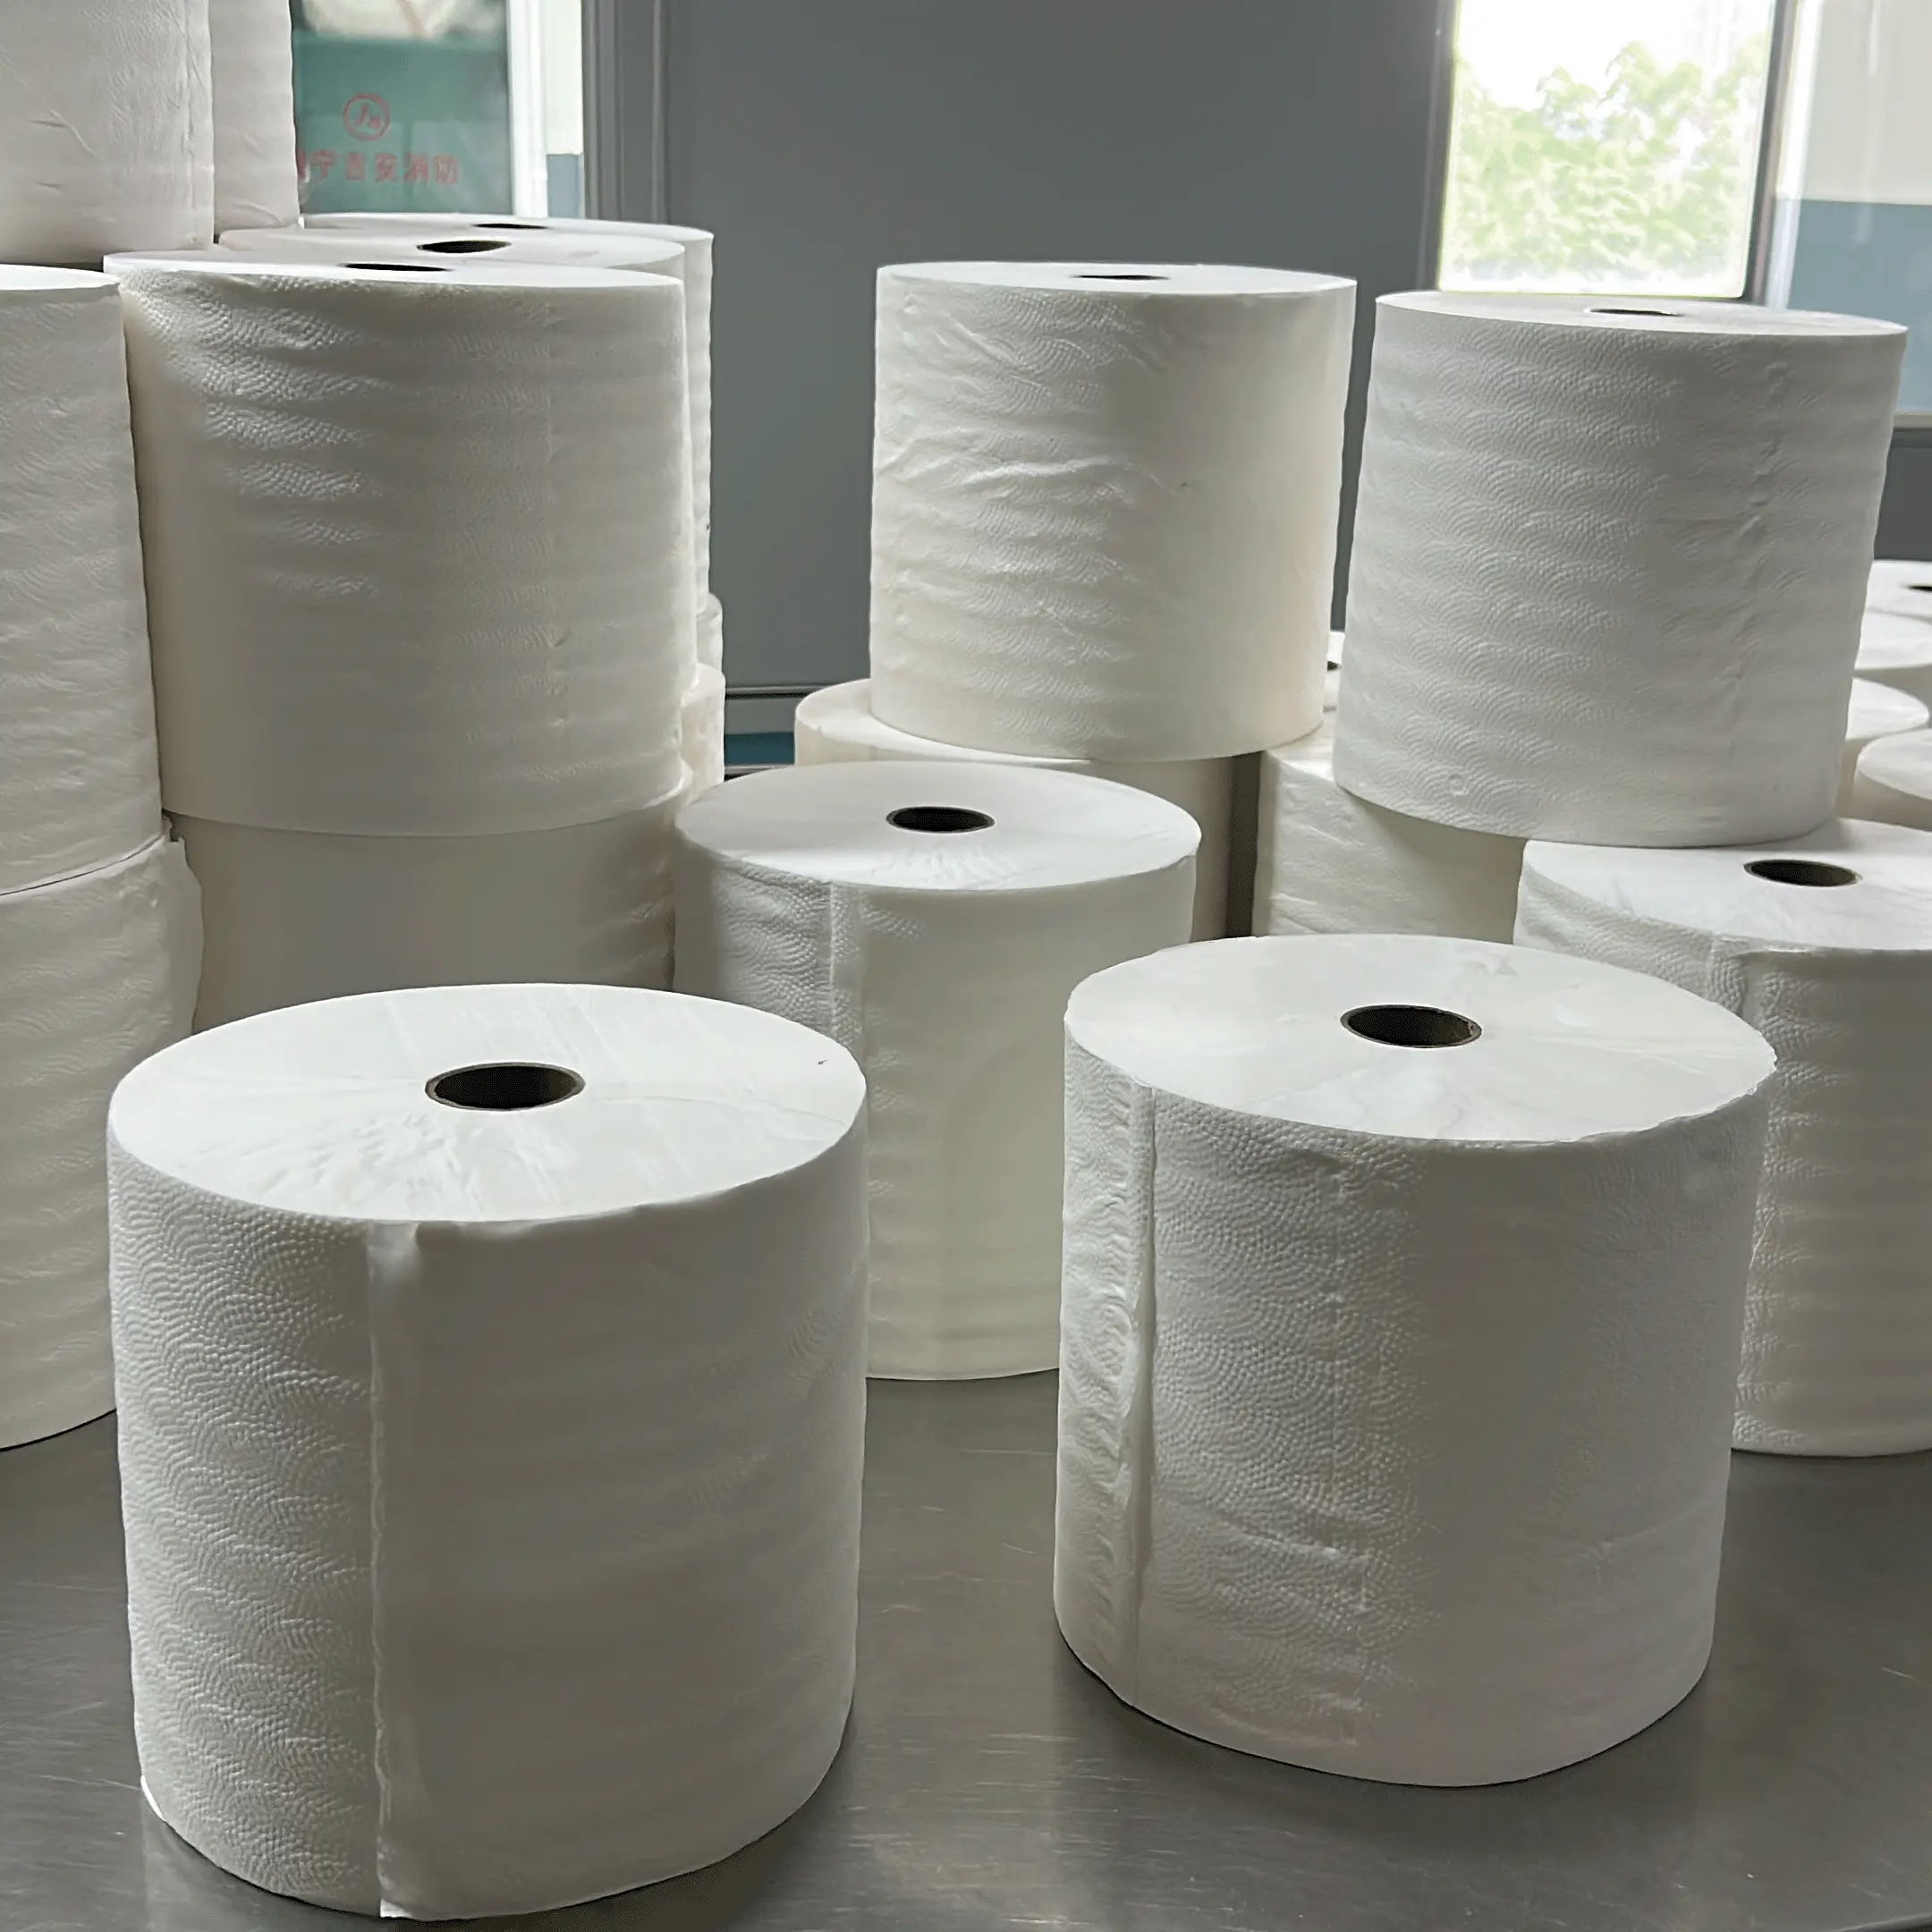 Rouleaux de serviettes en papier Jumbo commerciaux personnalisés en relief 2 plis papier hygiénique pâte de bambou serviette en papier grand rouleau de papier